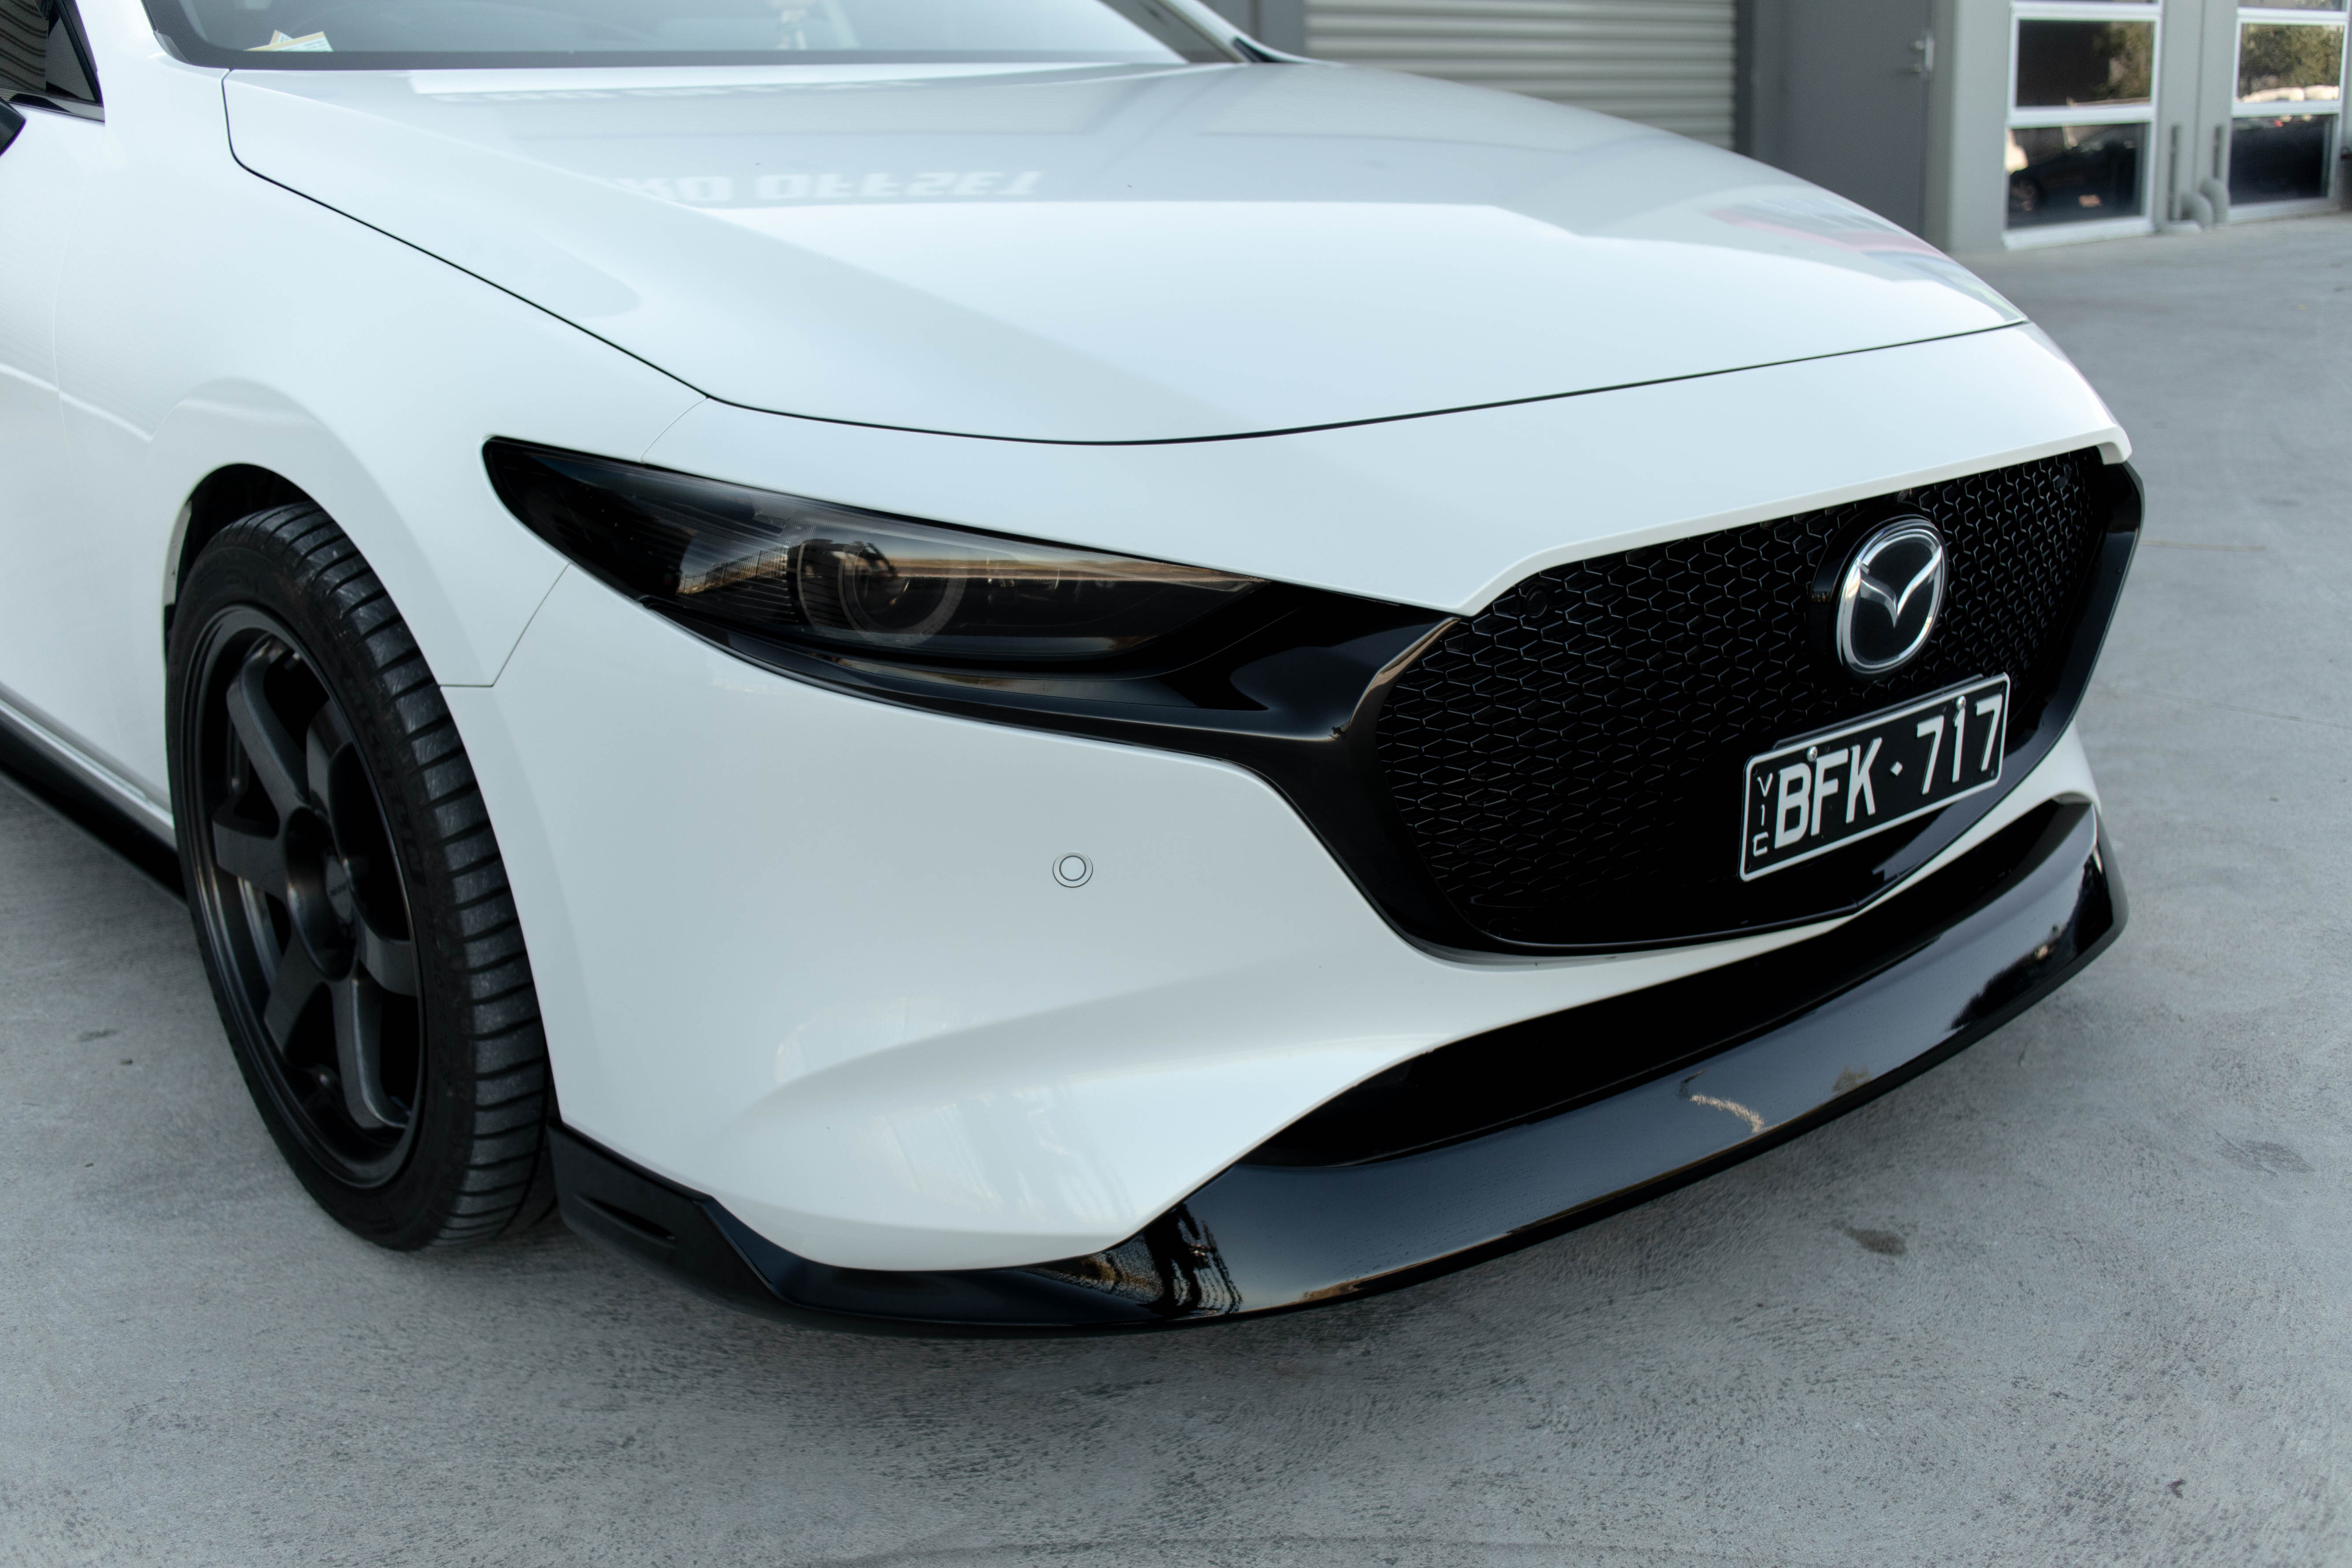 Zero Offset  Kuroi Style Front Lip for 19+ Mazda 3 BP (Hatch) - MODE Auto Concepts